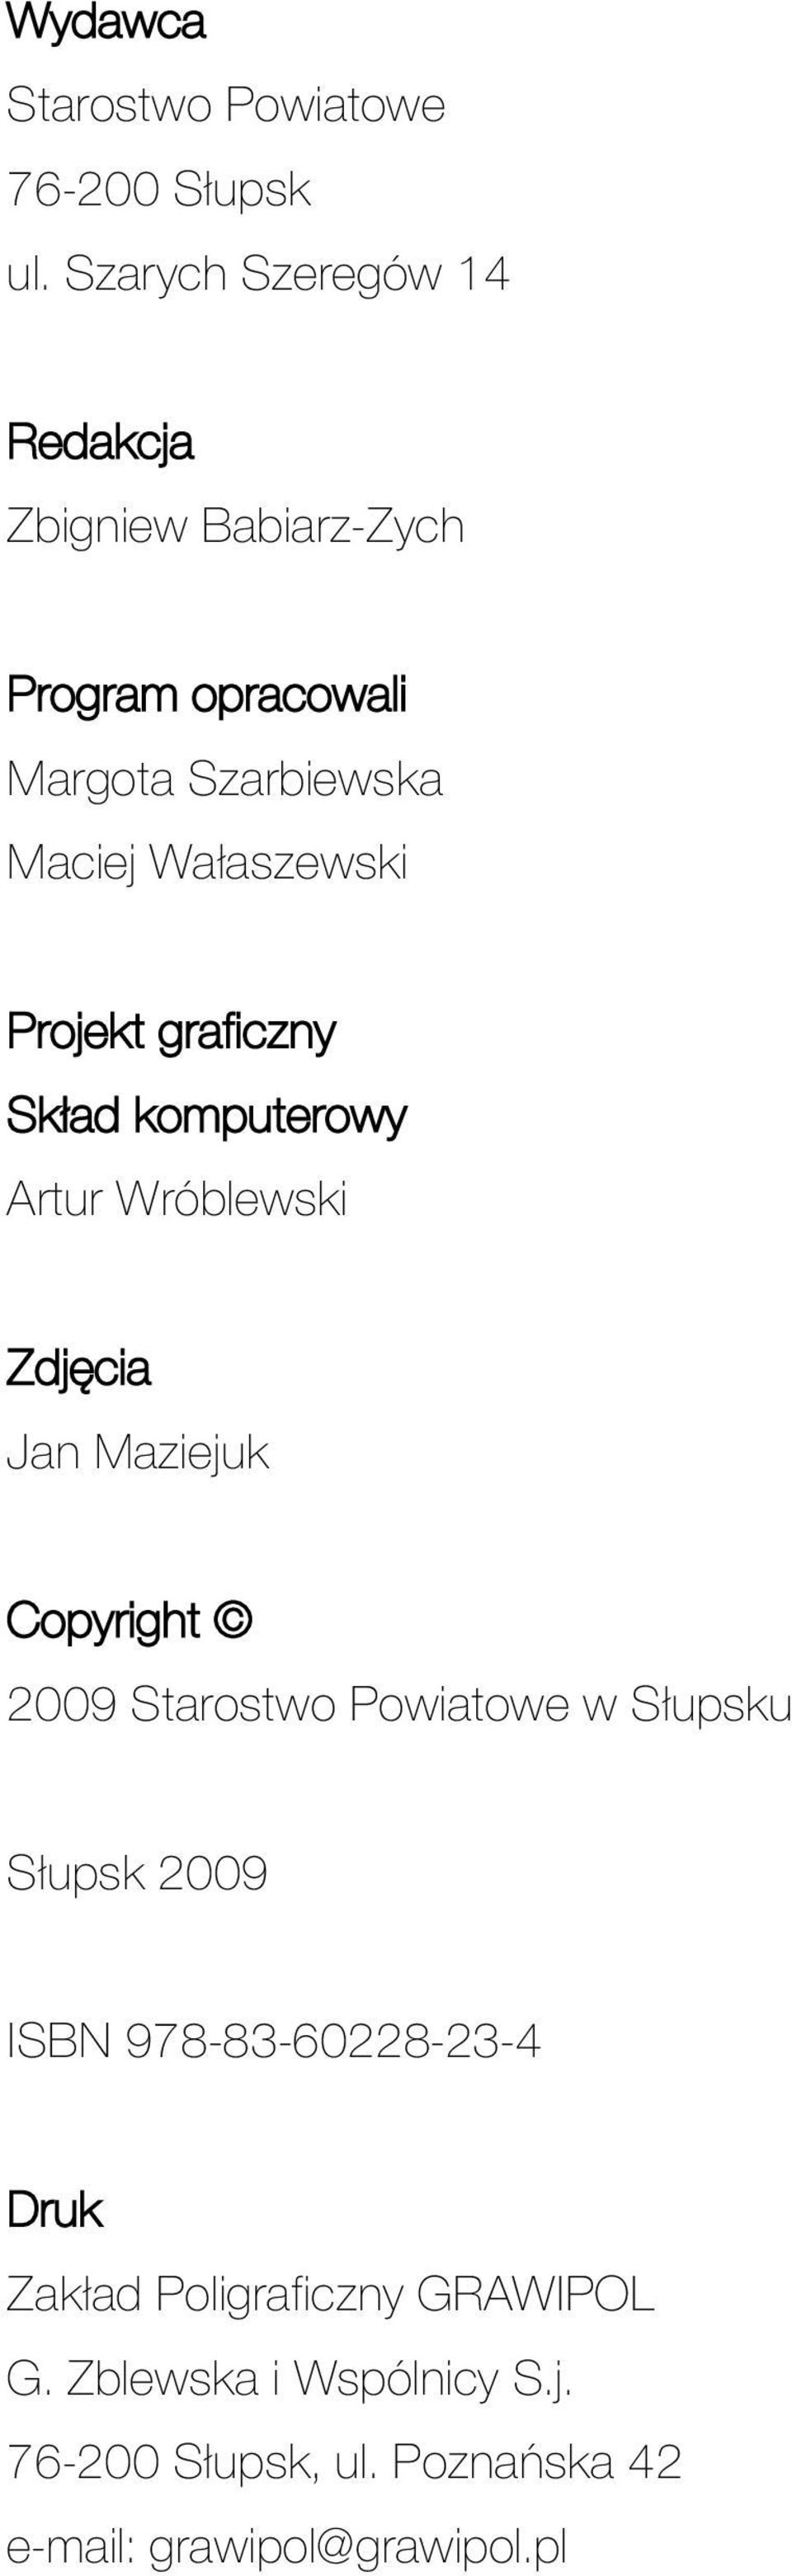 Projekt graficzny Skład komputerowy Artur Wróblewski Zdjęcia Jan Maziejuk Copyright 2009 Starostwo Powiatowe